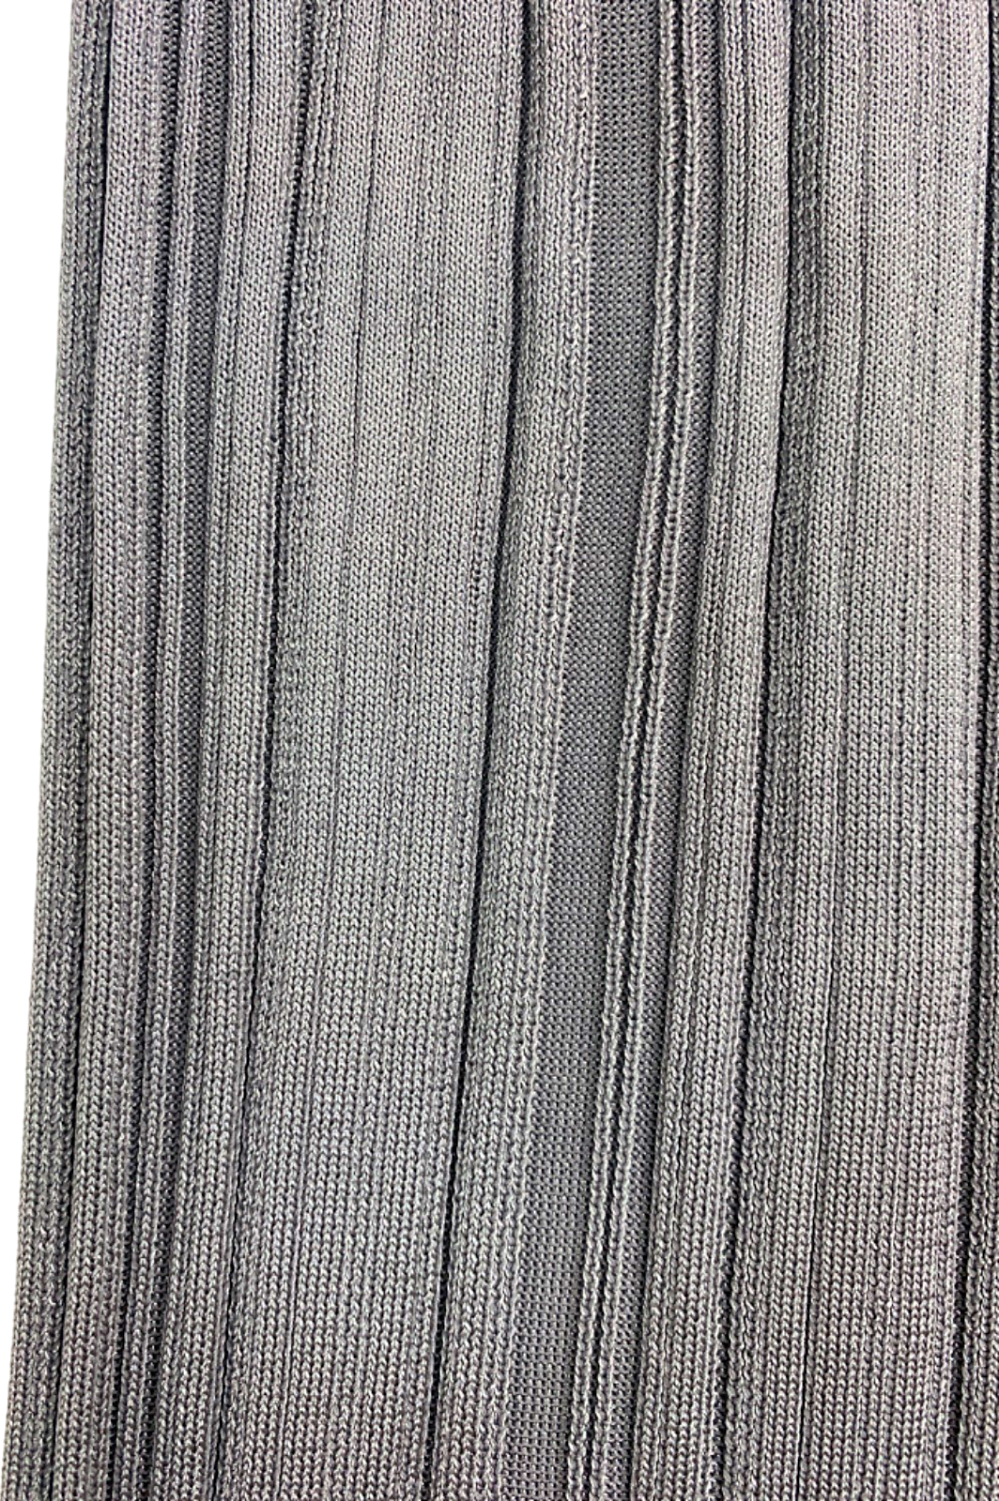 Zara Grey Ribbed Knit Pants Size S